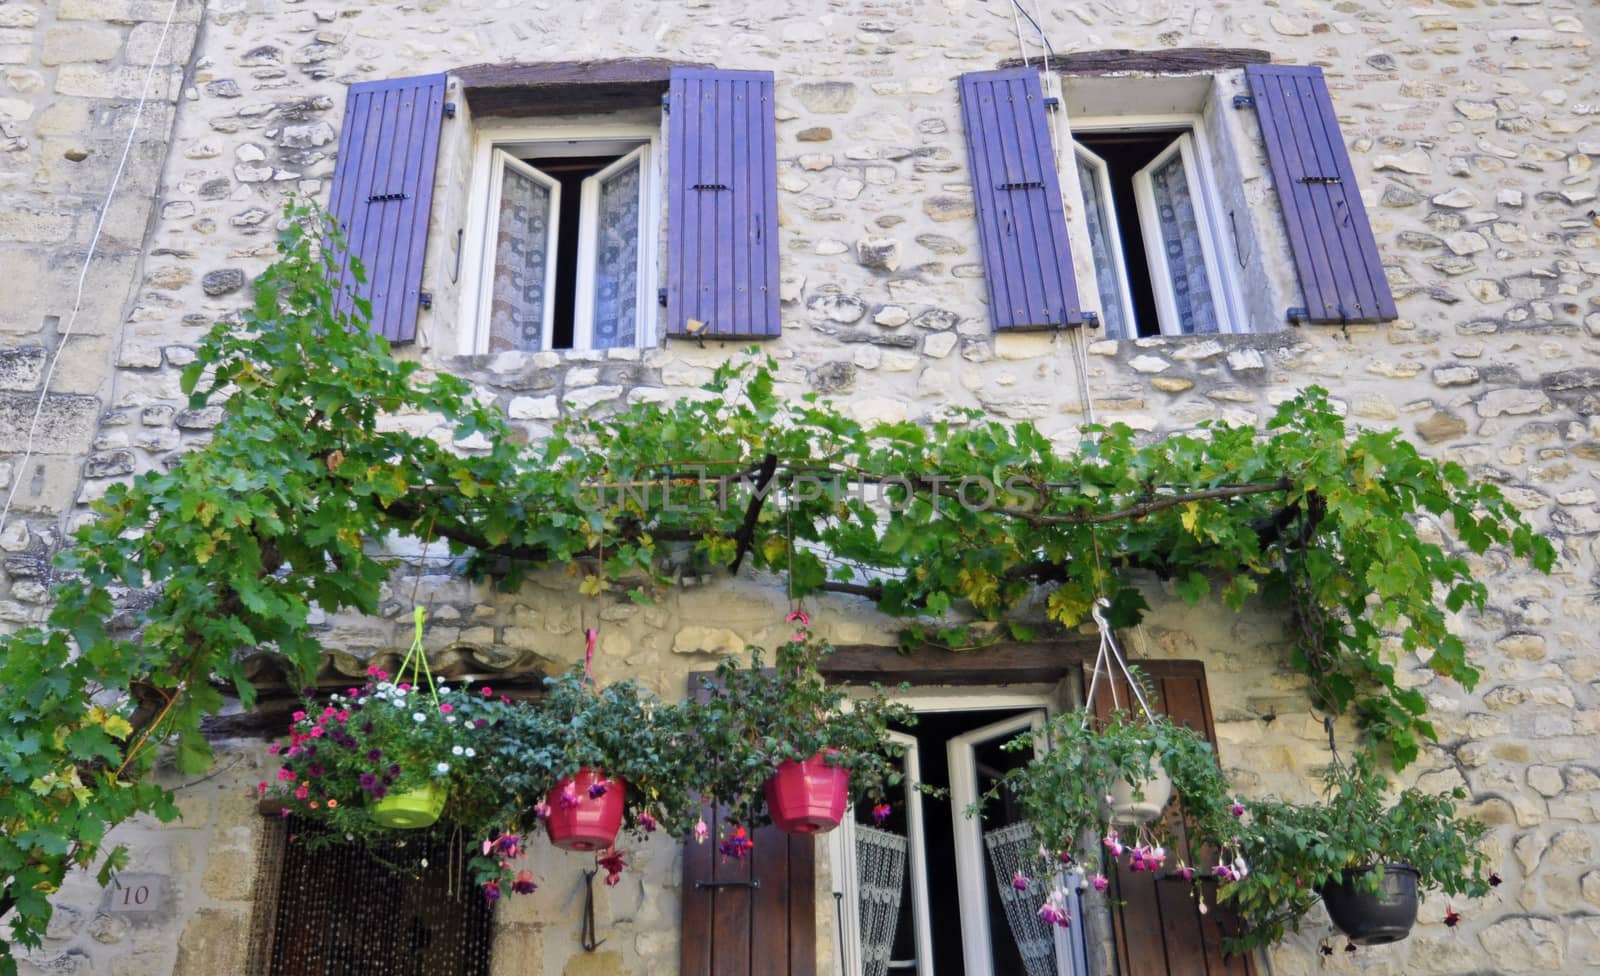 Vaison-La-Romaine,Vancluse, in Provence, France by dpe123